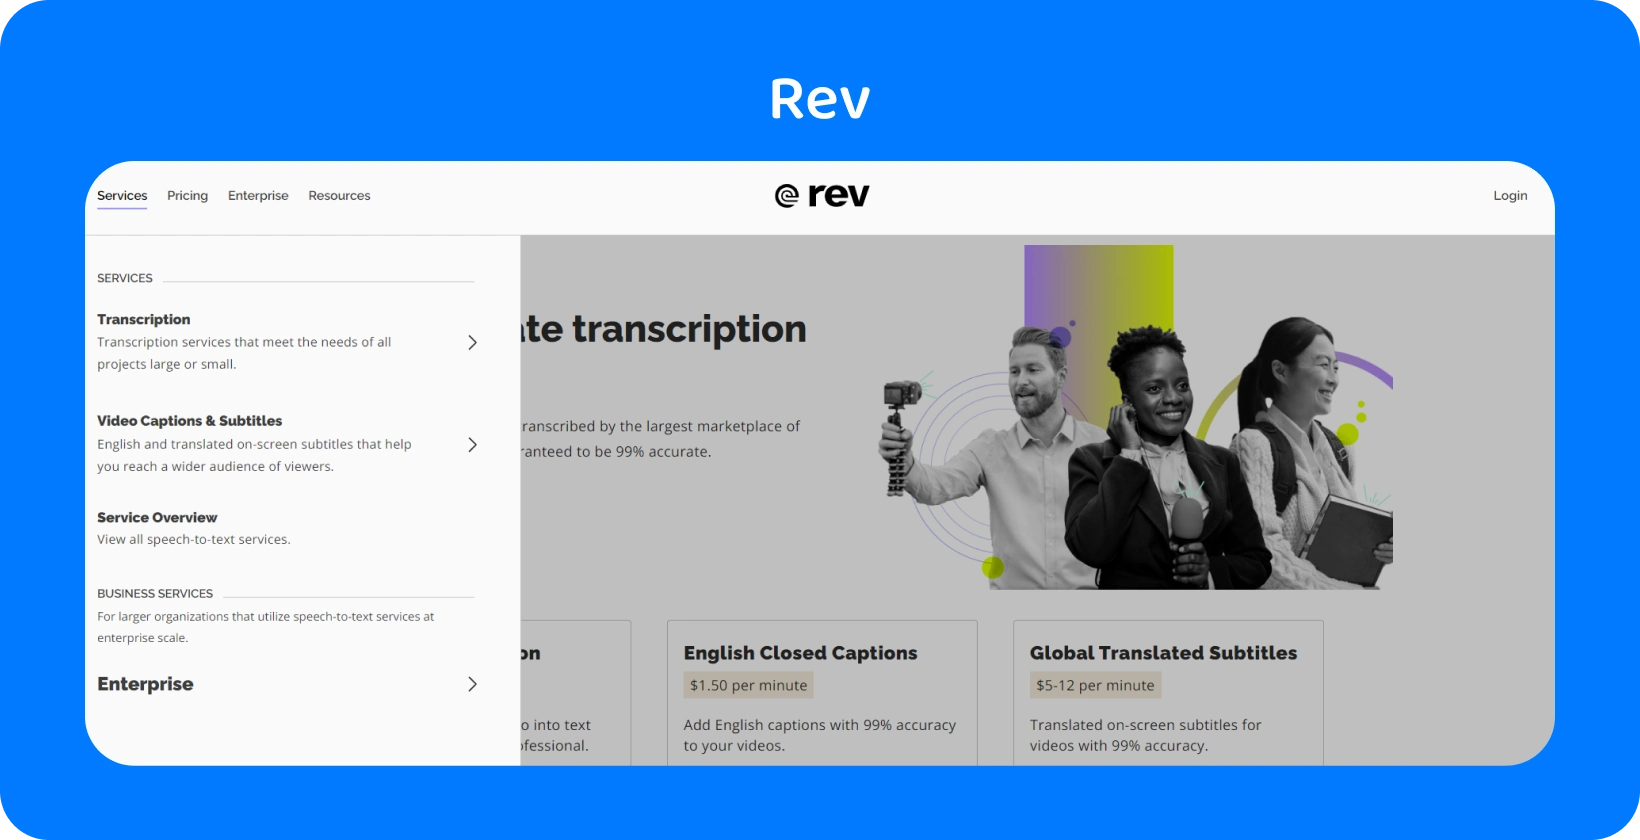 La página de inicio de Rev muestra servicios de transcripción para una conversión rápida y precisa de audio a texto para profesionales.